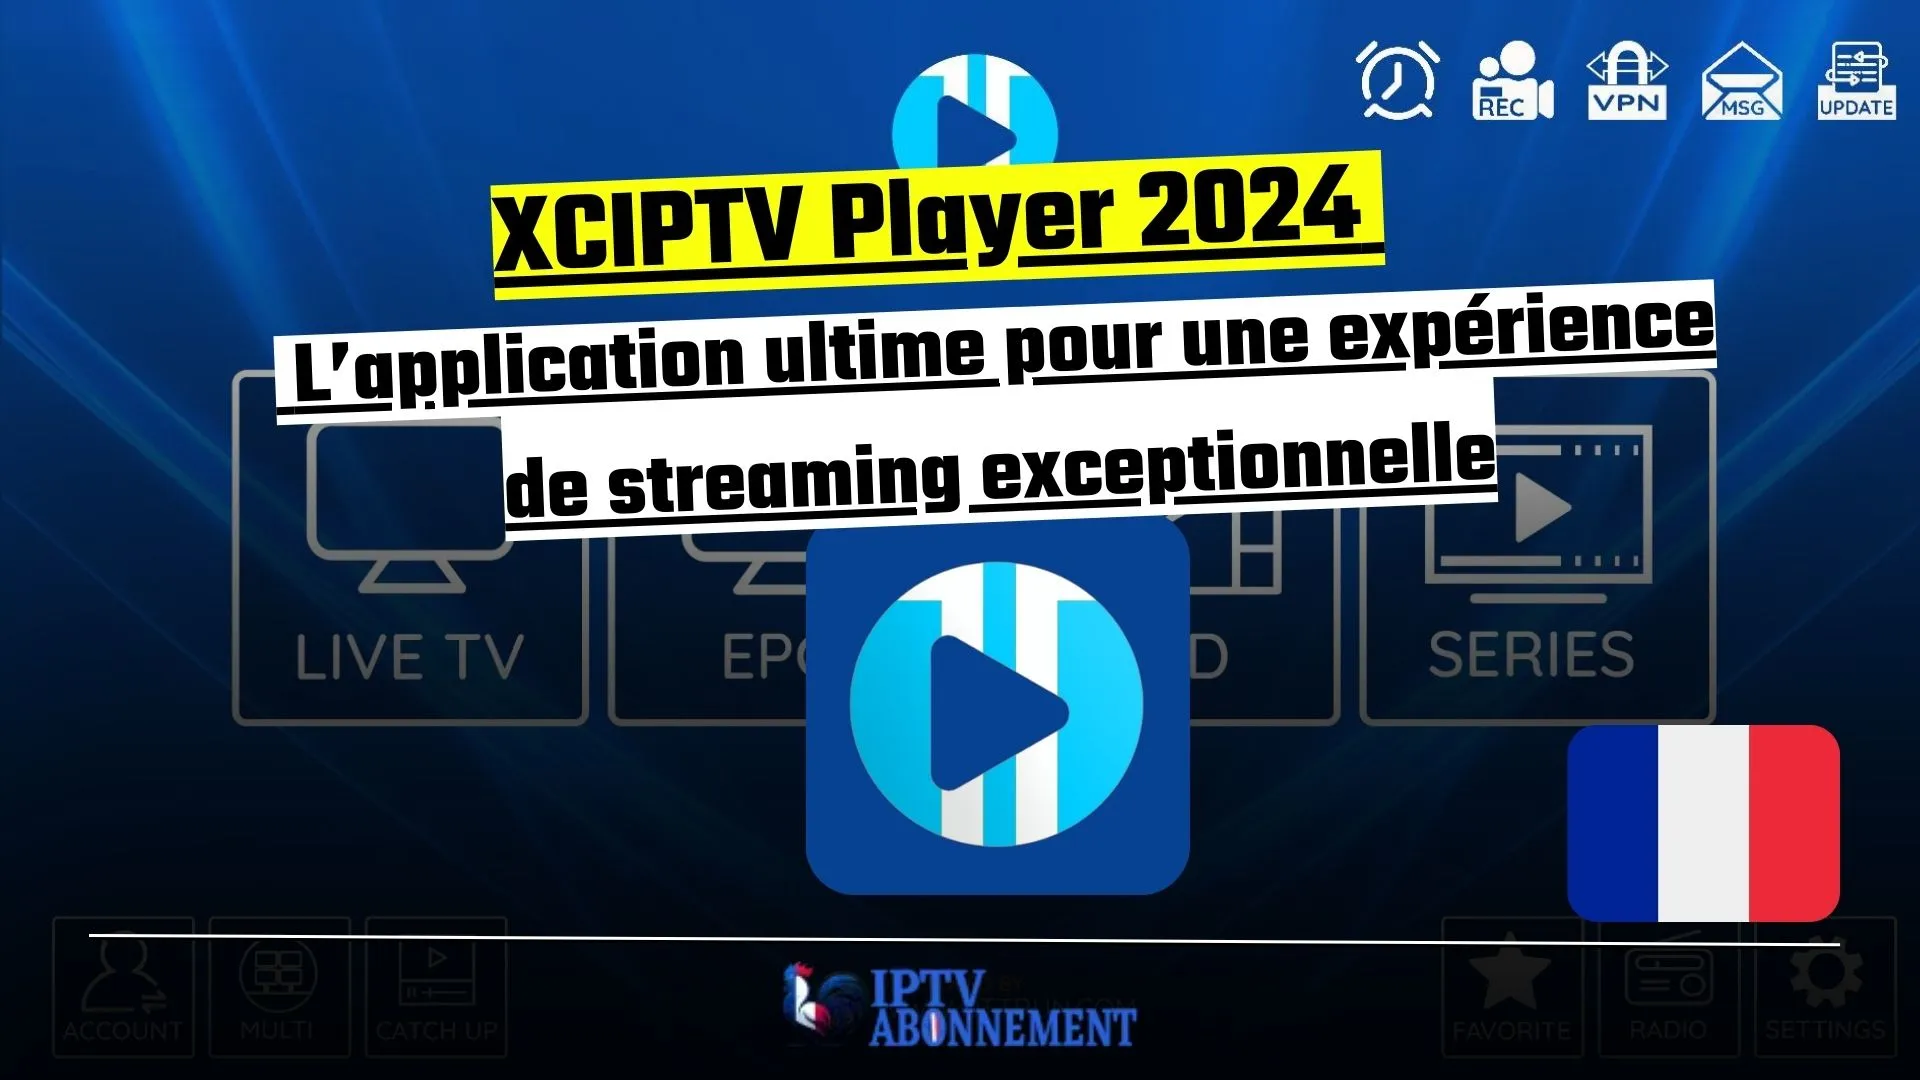 XCIPTV Player 2024 : L'application ultime pour une expérience de streaming exceptionnelle